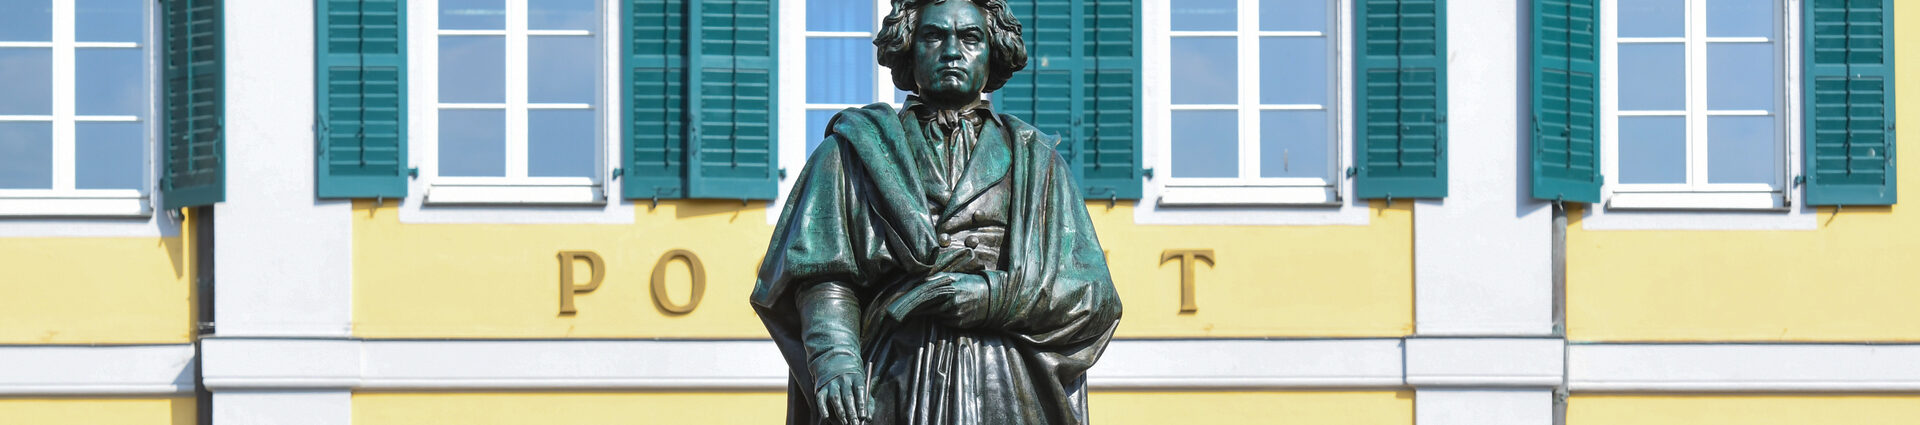 Nach monatelanger Restaurierung wurde das Beethoven-Denkmal Anfang Juli wieder an seinen angestammten Platz aufgestellt